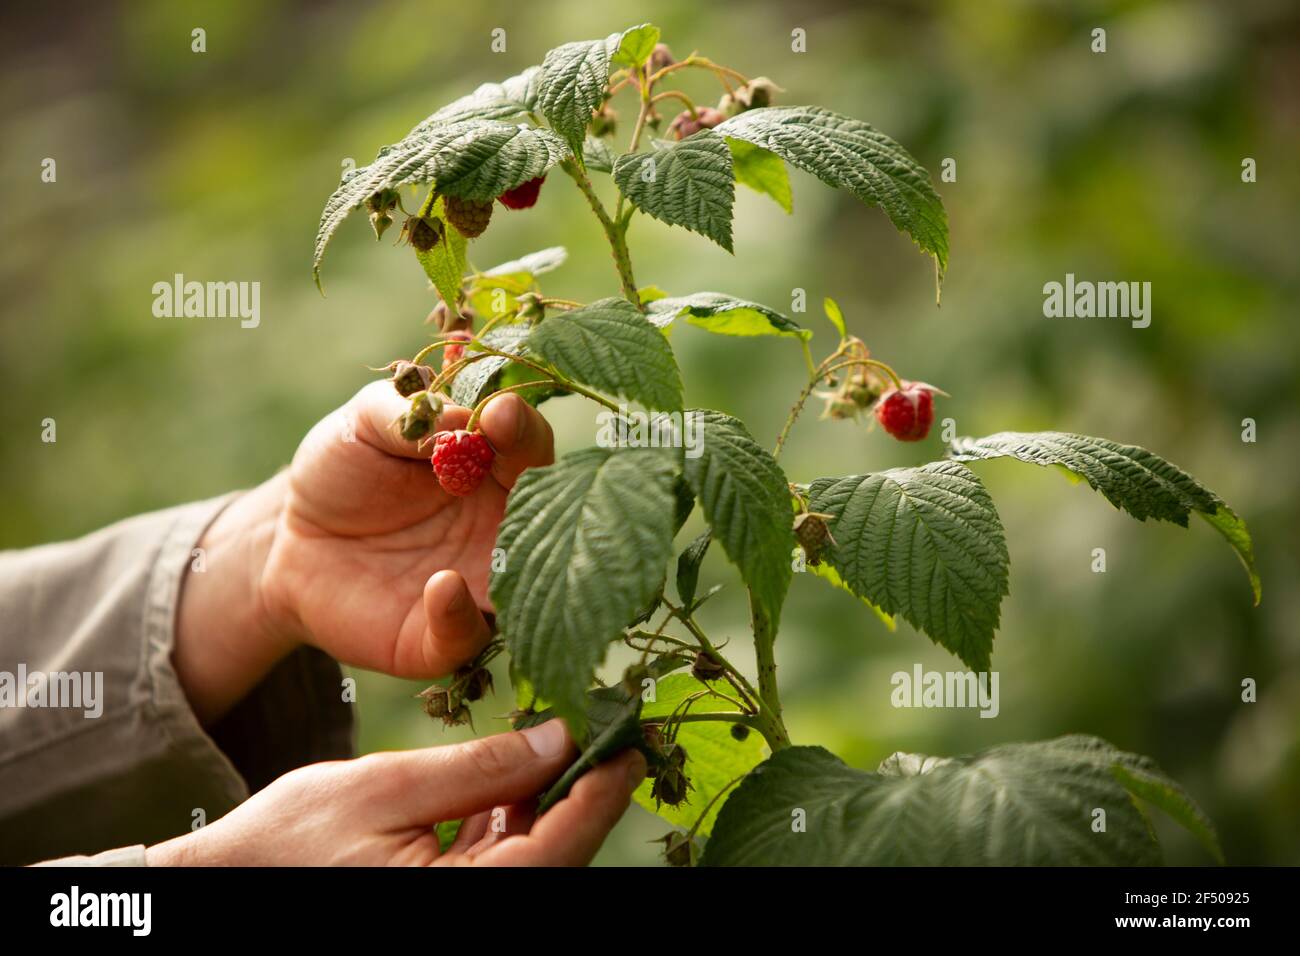 Cerca de las manos inspeccionando la planta de frambuesa en el jardín Foto de stock